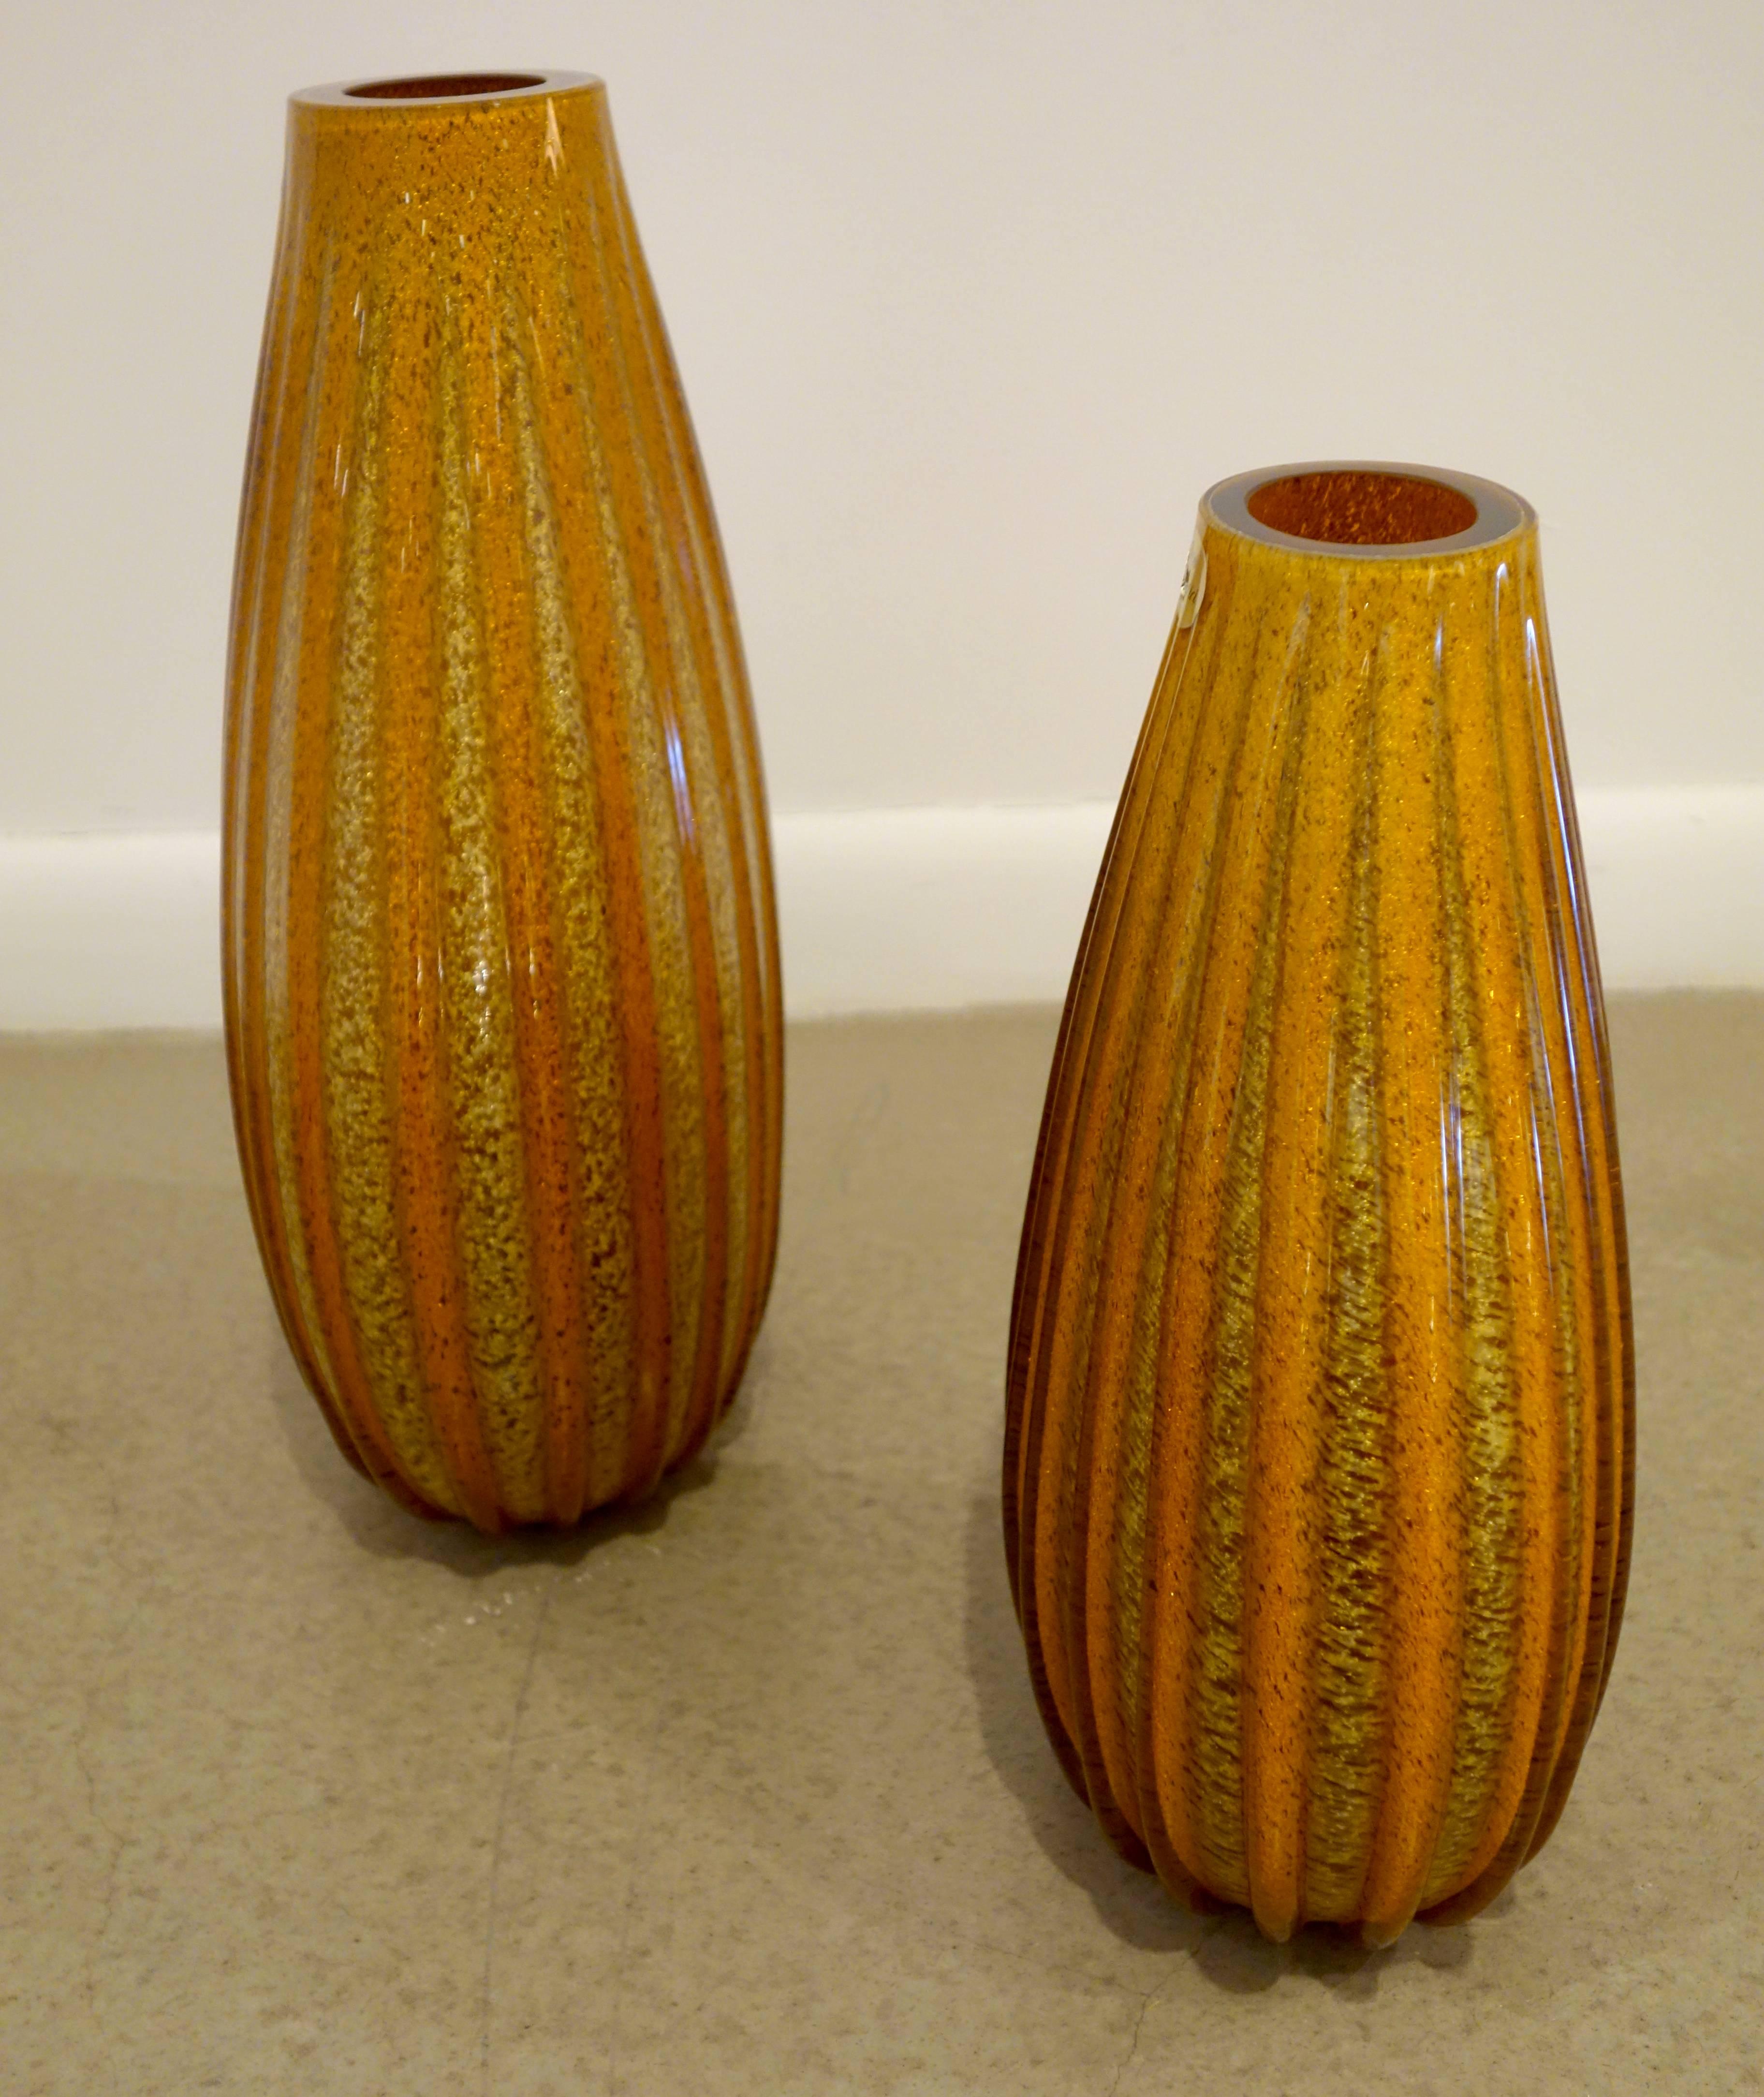 Ein Paar italienische Vasen aus dickem Muranoglas in Zwiebelform, geriffelt mit abwechselnd orange- und goldfarbenen Flecken; Etikett von Vetri Artistic. Die kleinere Vase ist 12,75